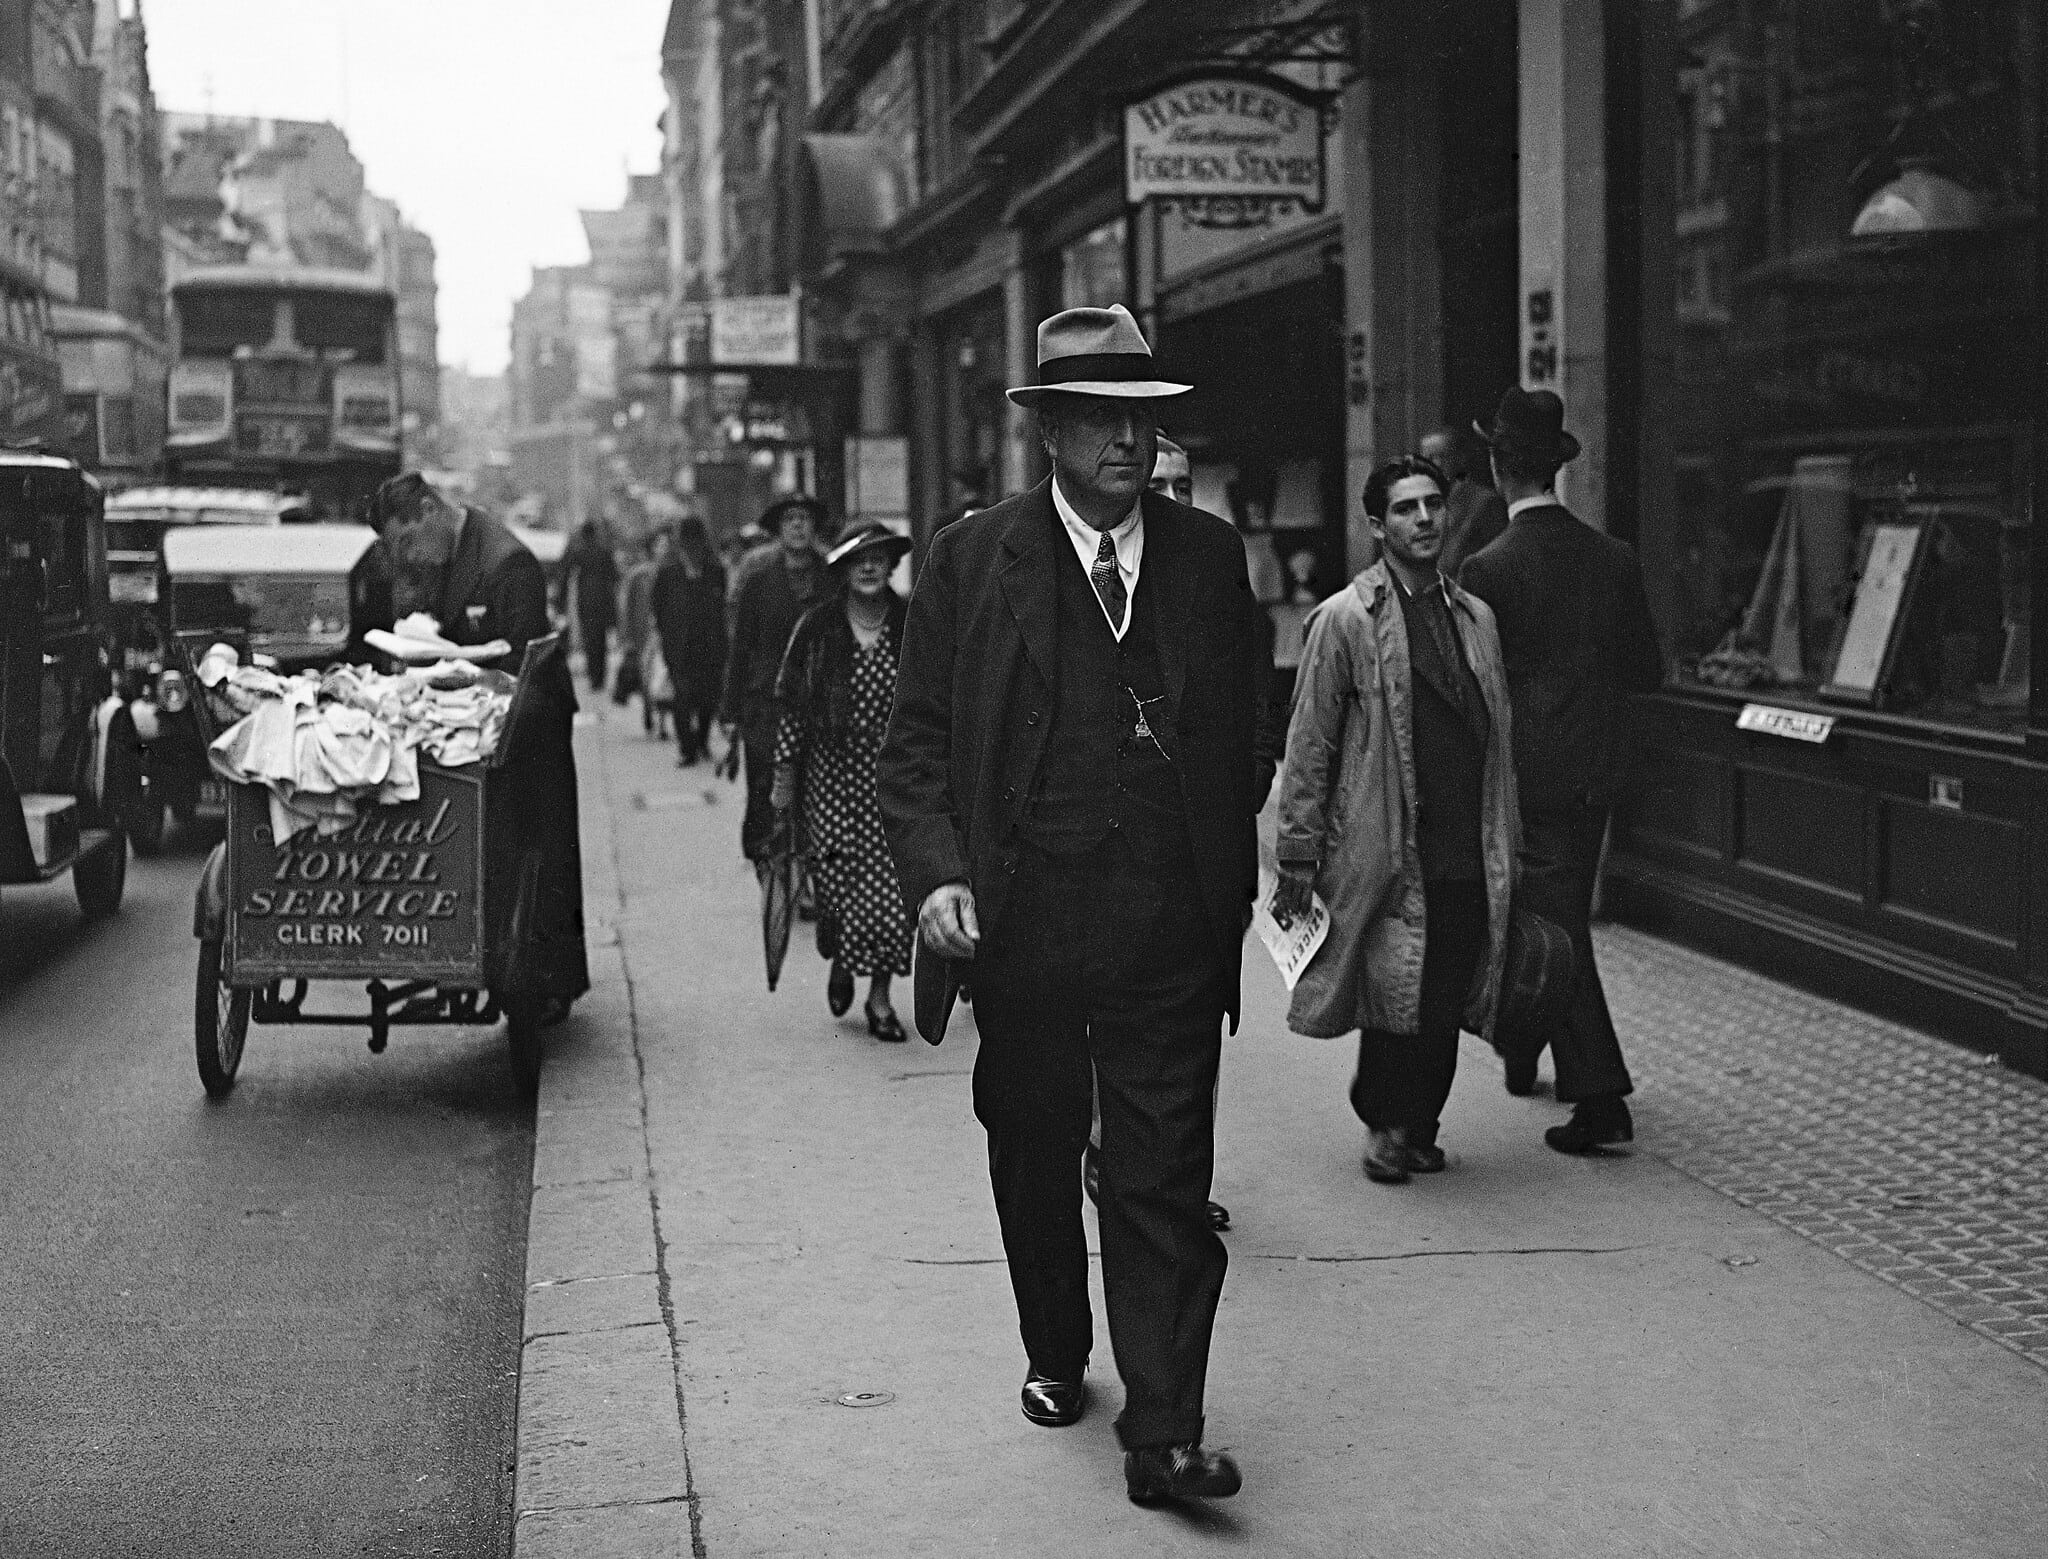 ויליאם רנדולף הרסט, מגדולי בעלי העיתונאים בארה"ב, לונדון, 25 בספטמבר 1936 (צילום: AP Photo/Worth)